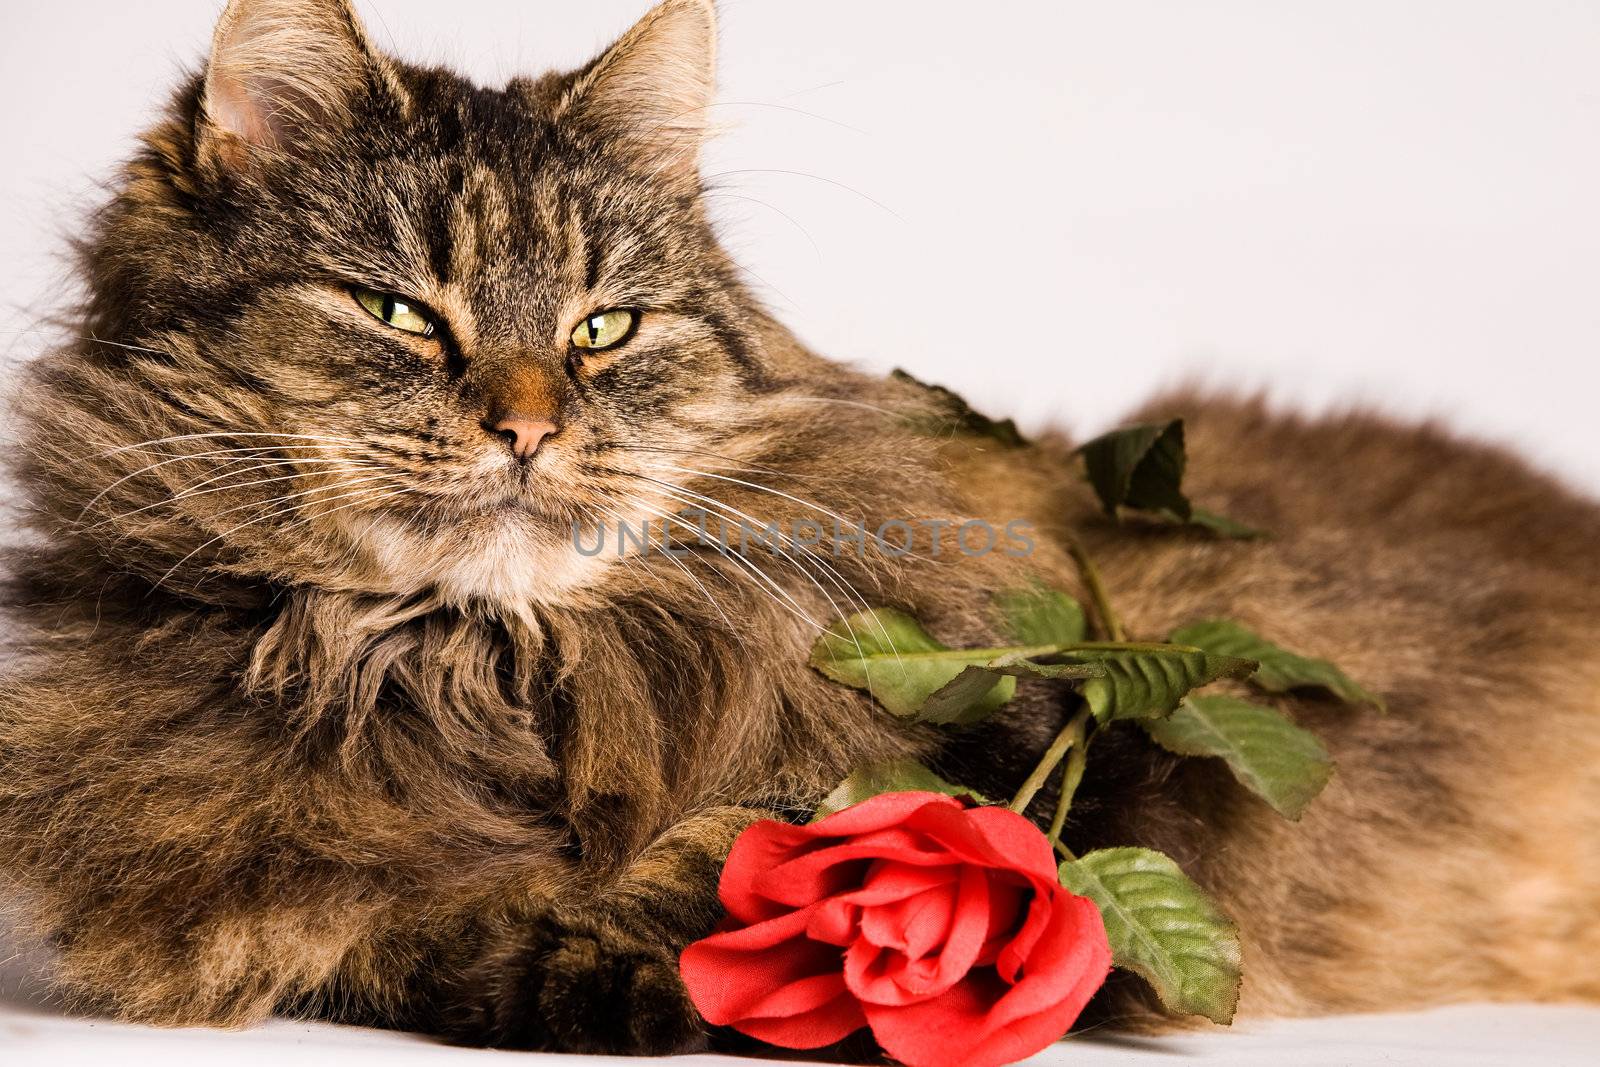 Cat wiiyh valentine rose by DNFStyle